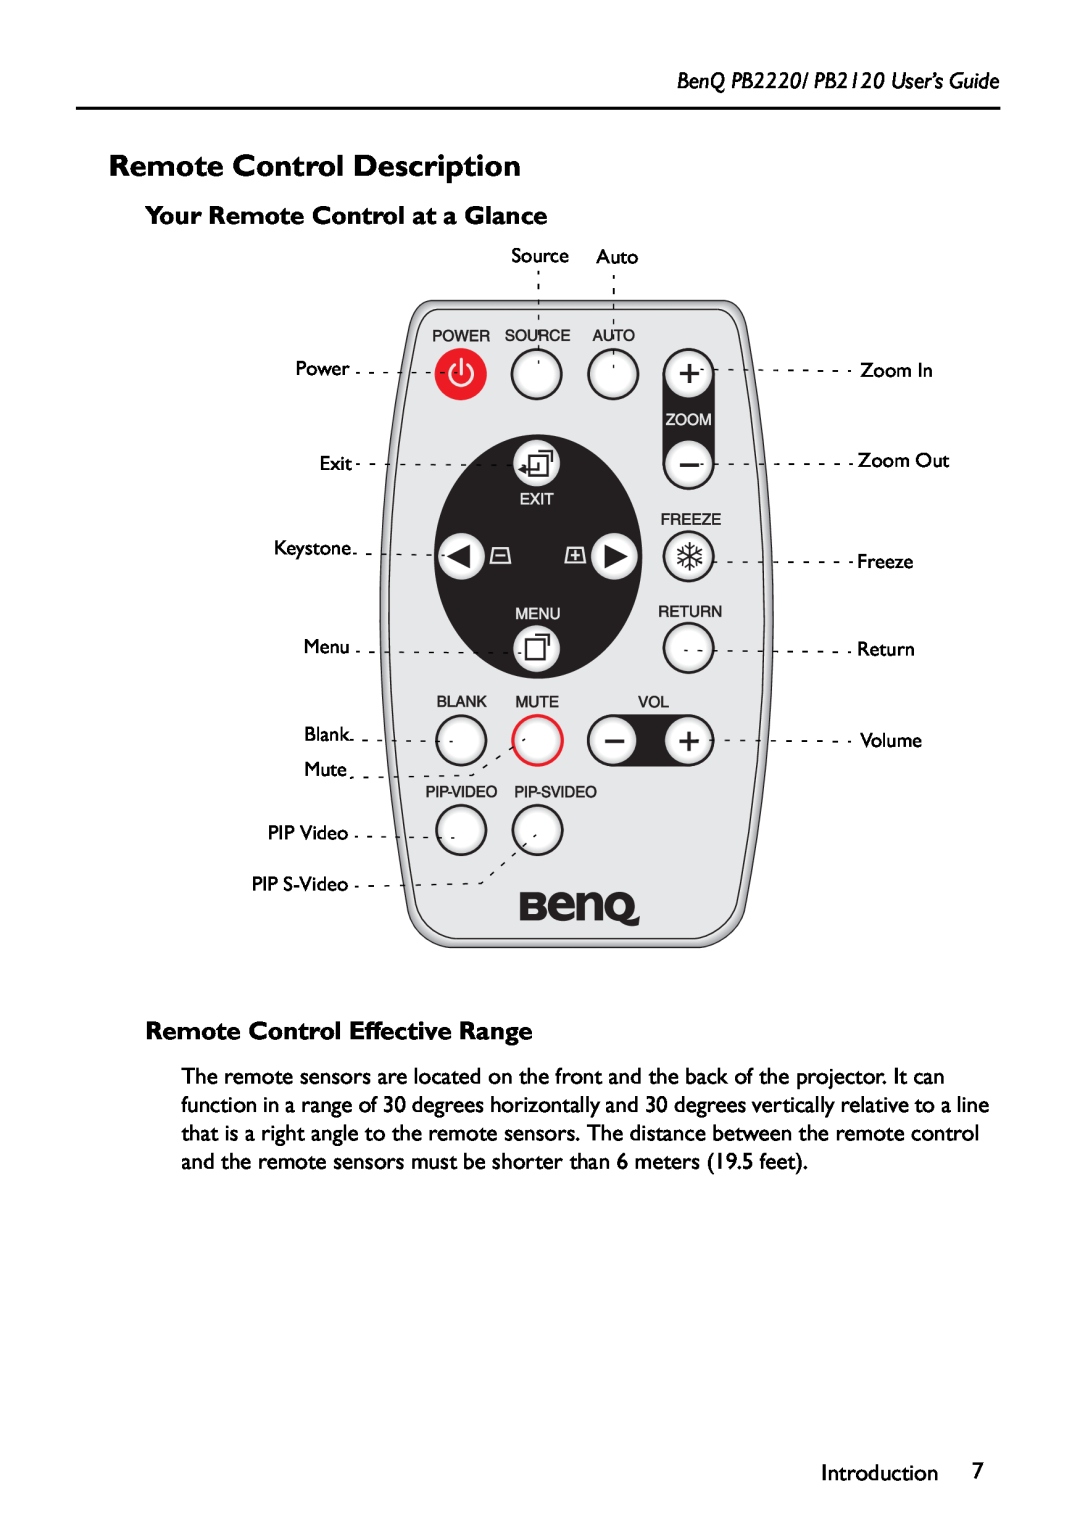 BenQ PB2220/ PB2120 manual Remote Control Description, Your Remote Control at a Glance, Remote Control Effective Range 